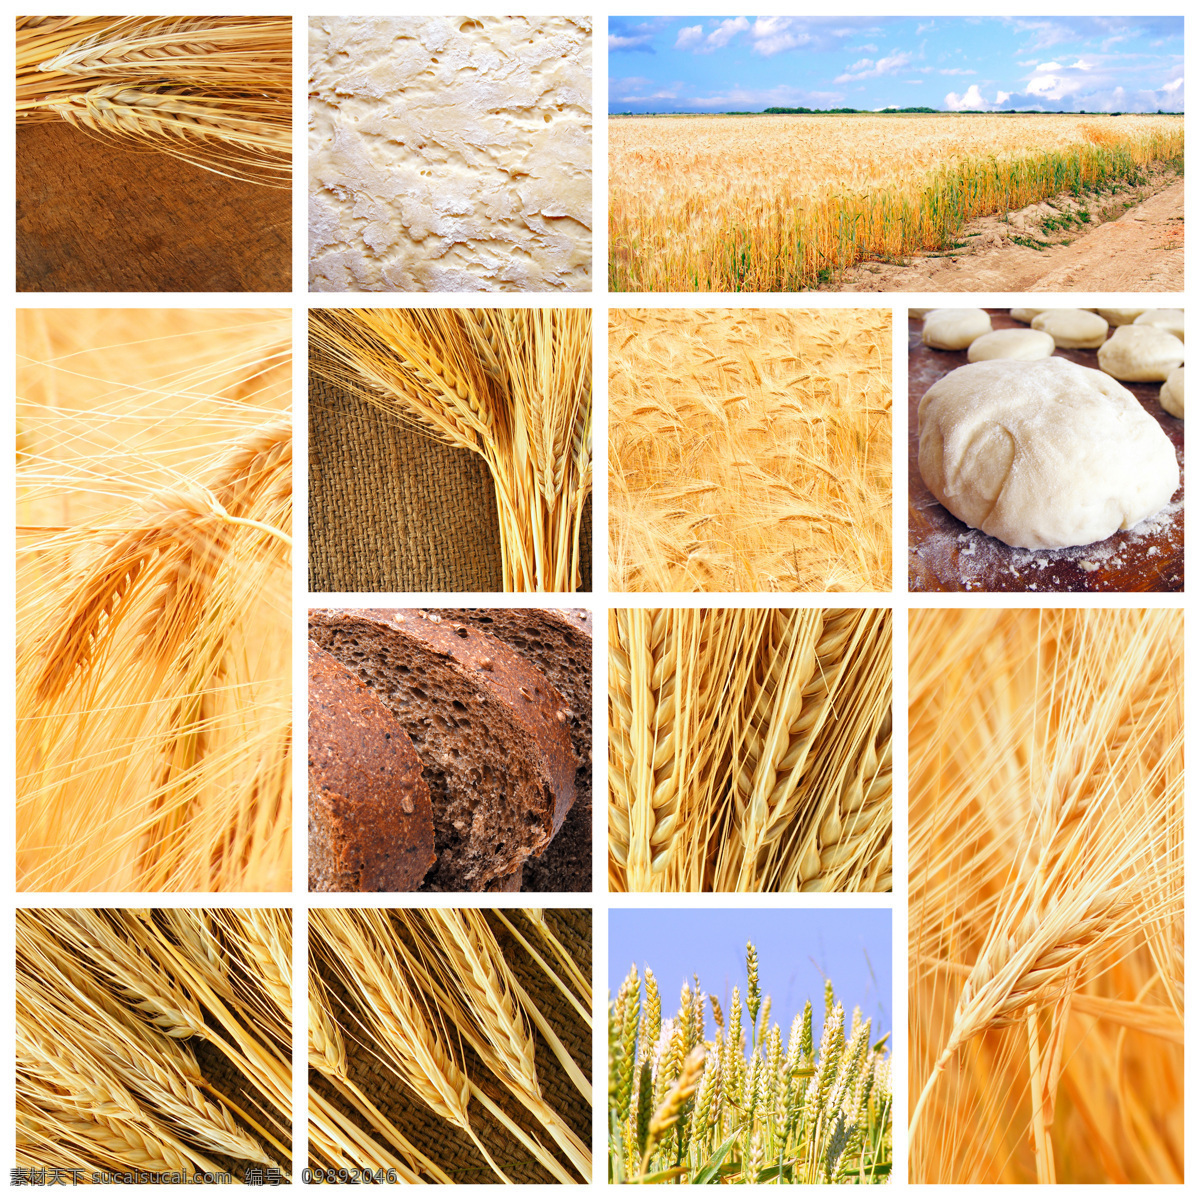 麦子 丰收 图片集 自然风景 麦田 麦穗 全麦面包 丰收景象 秋景 秋意 山水风景 风景图片